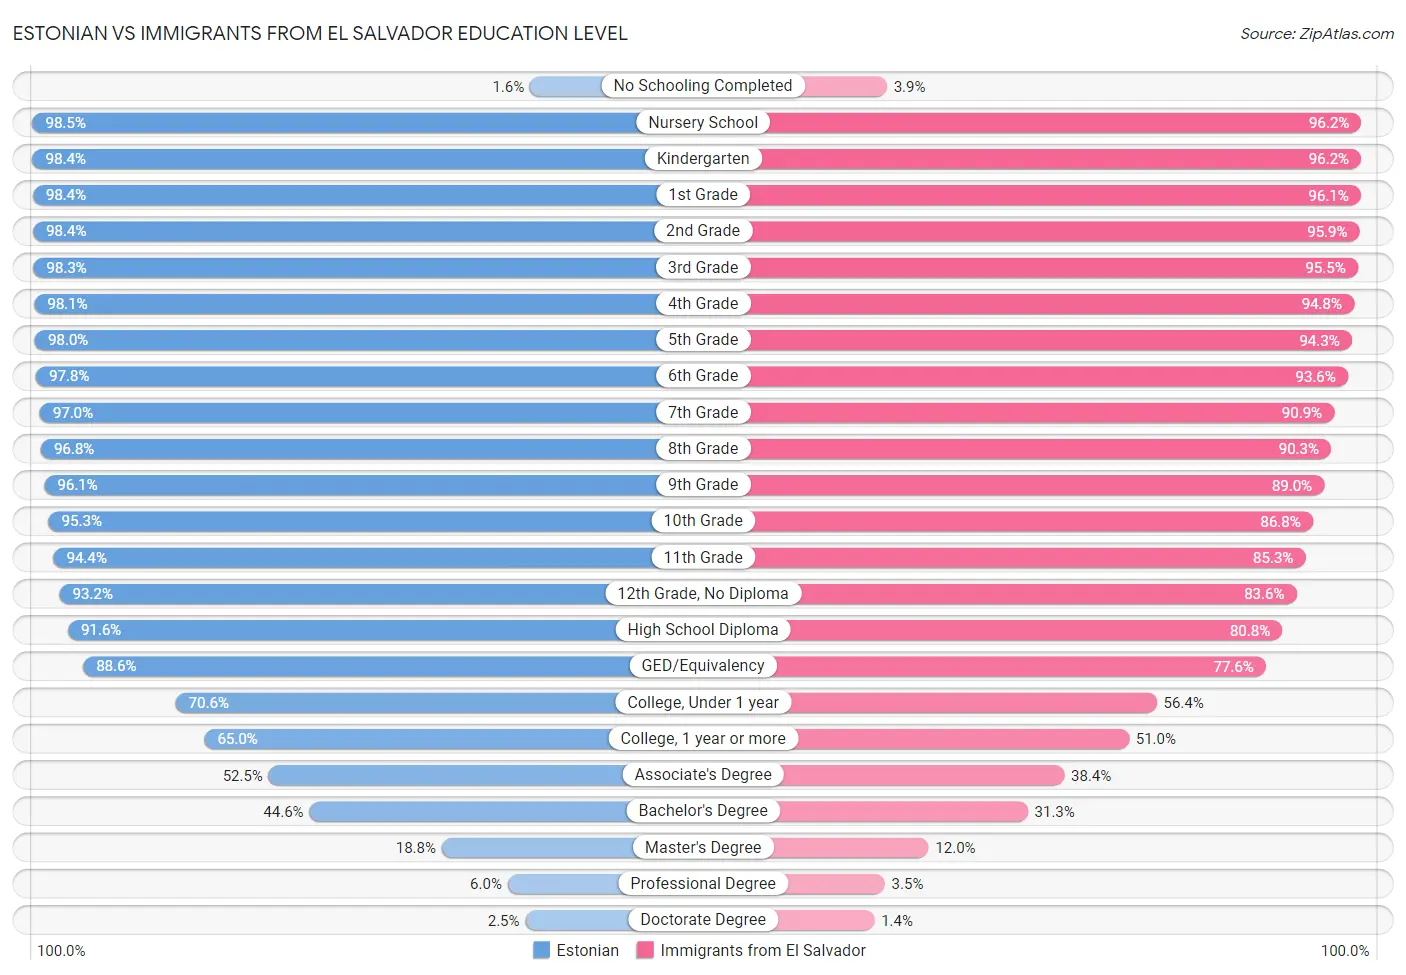 Estonian vs Immigrants from El Salvador Education Level